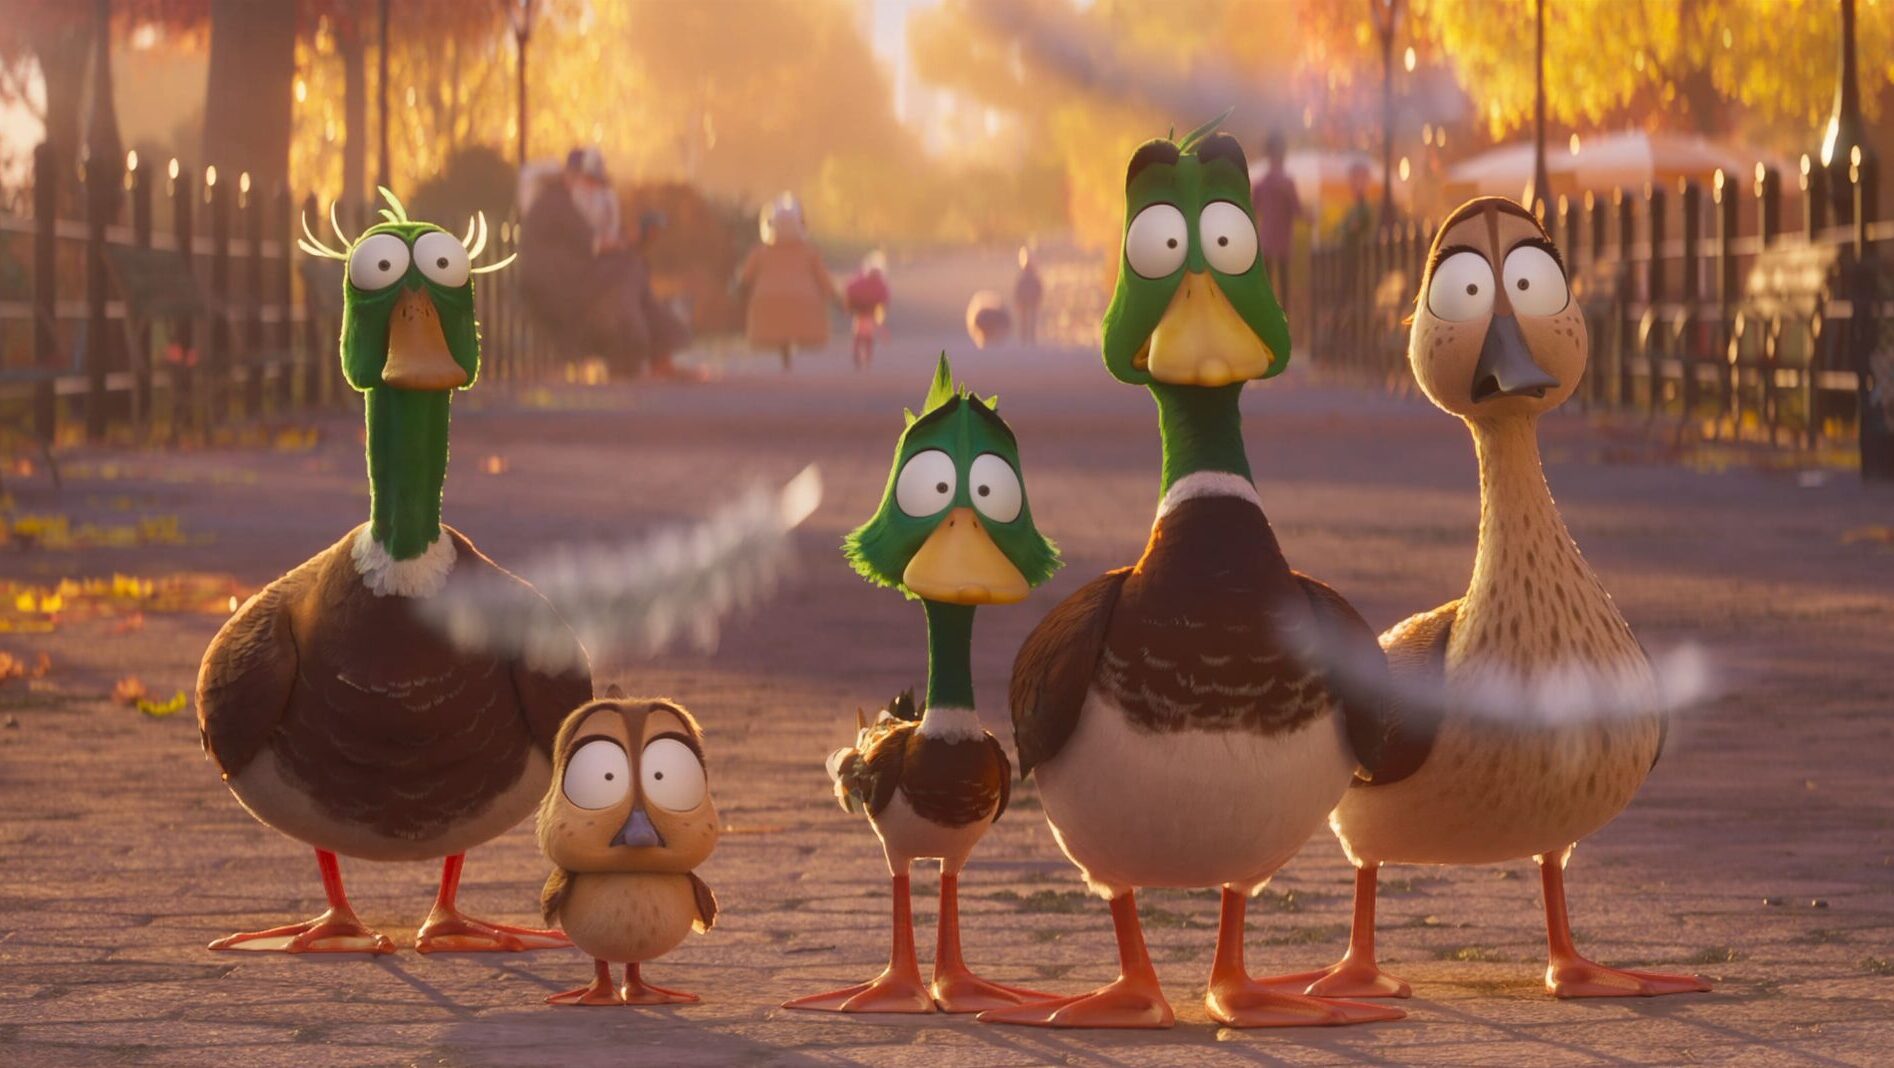 Tudo que sabemos sobre "Patos", filme da Illumination - Hypando